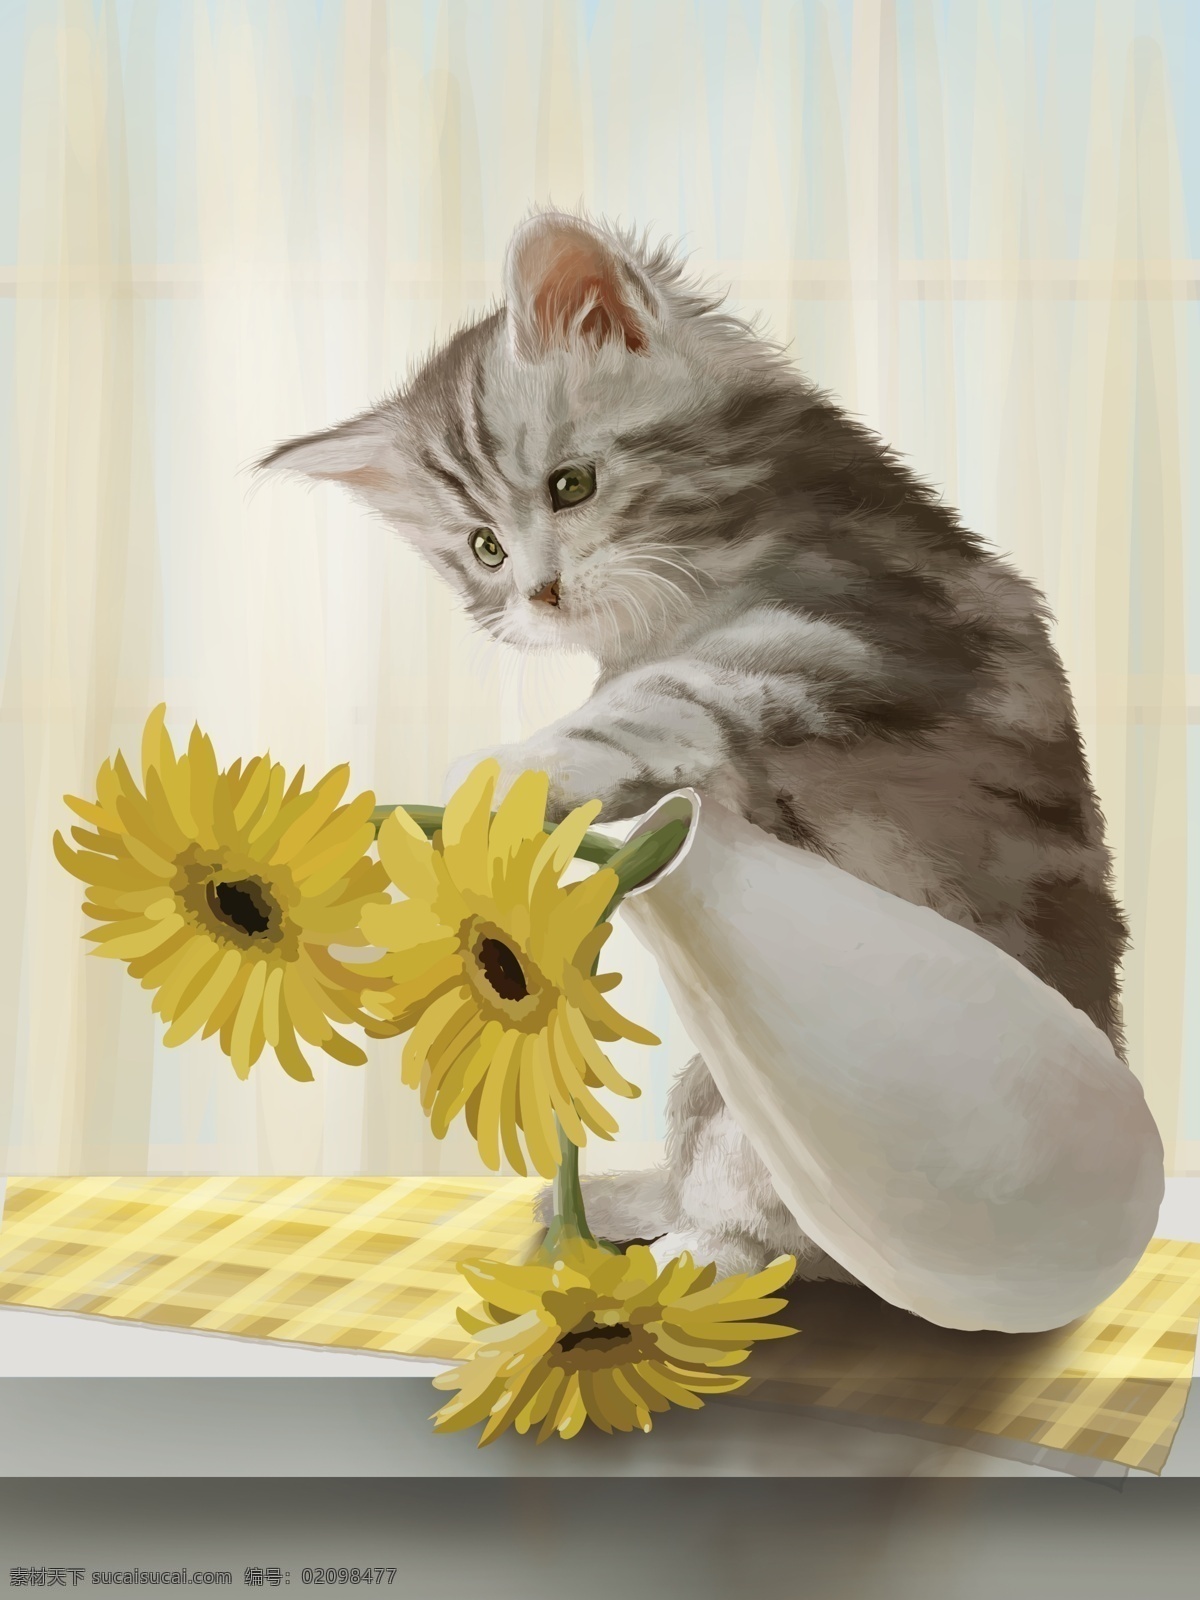 原创 手绘 插画 宠物 猫 非洲菊 温馨 小清新 菊花 花瓶 窗台 桌布 水粉 写实 配图